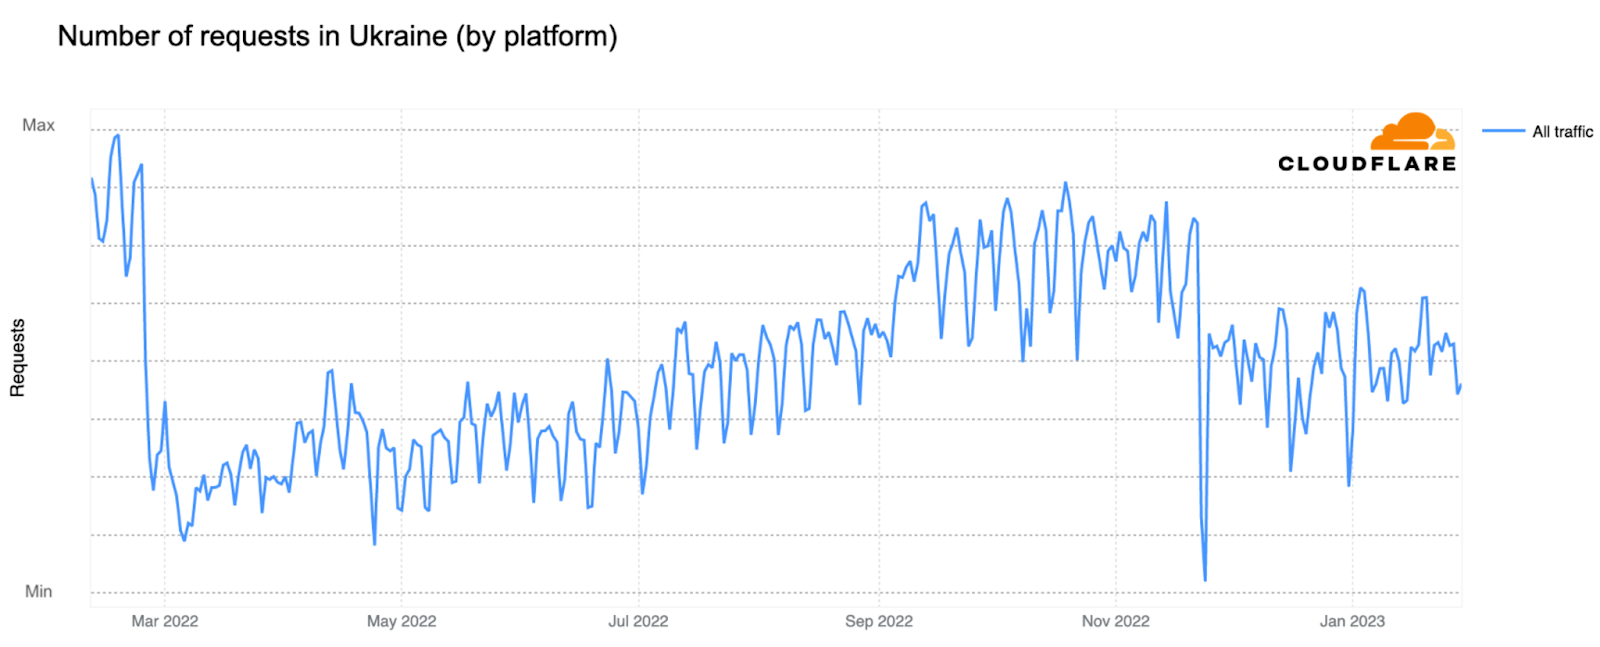 下图显示了Cloudflare对每日流量的看法（按请求数）。